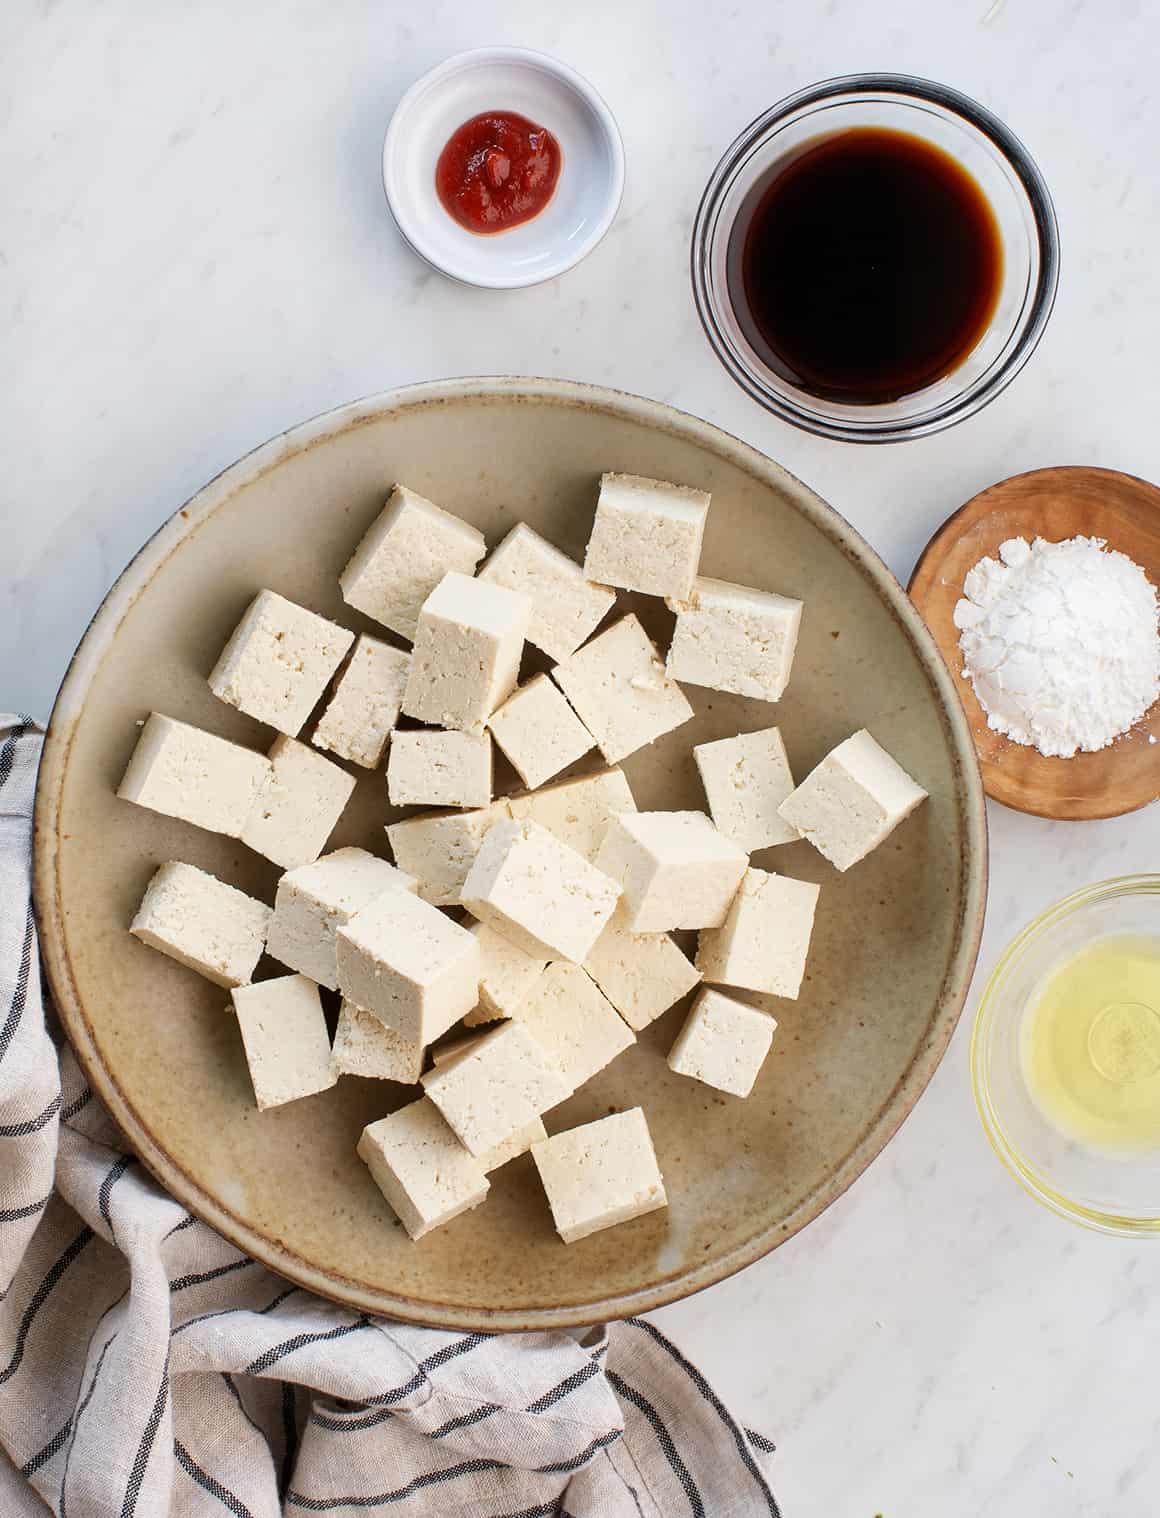 Air fryer tofu recipe ingredients